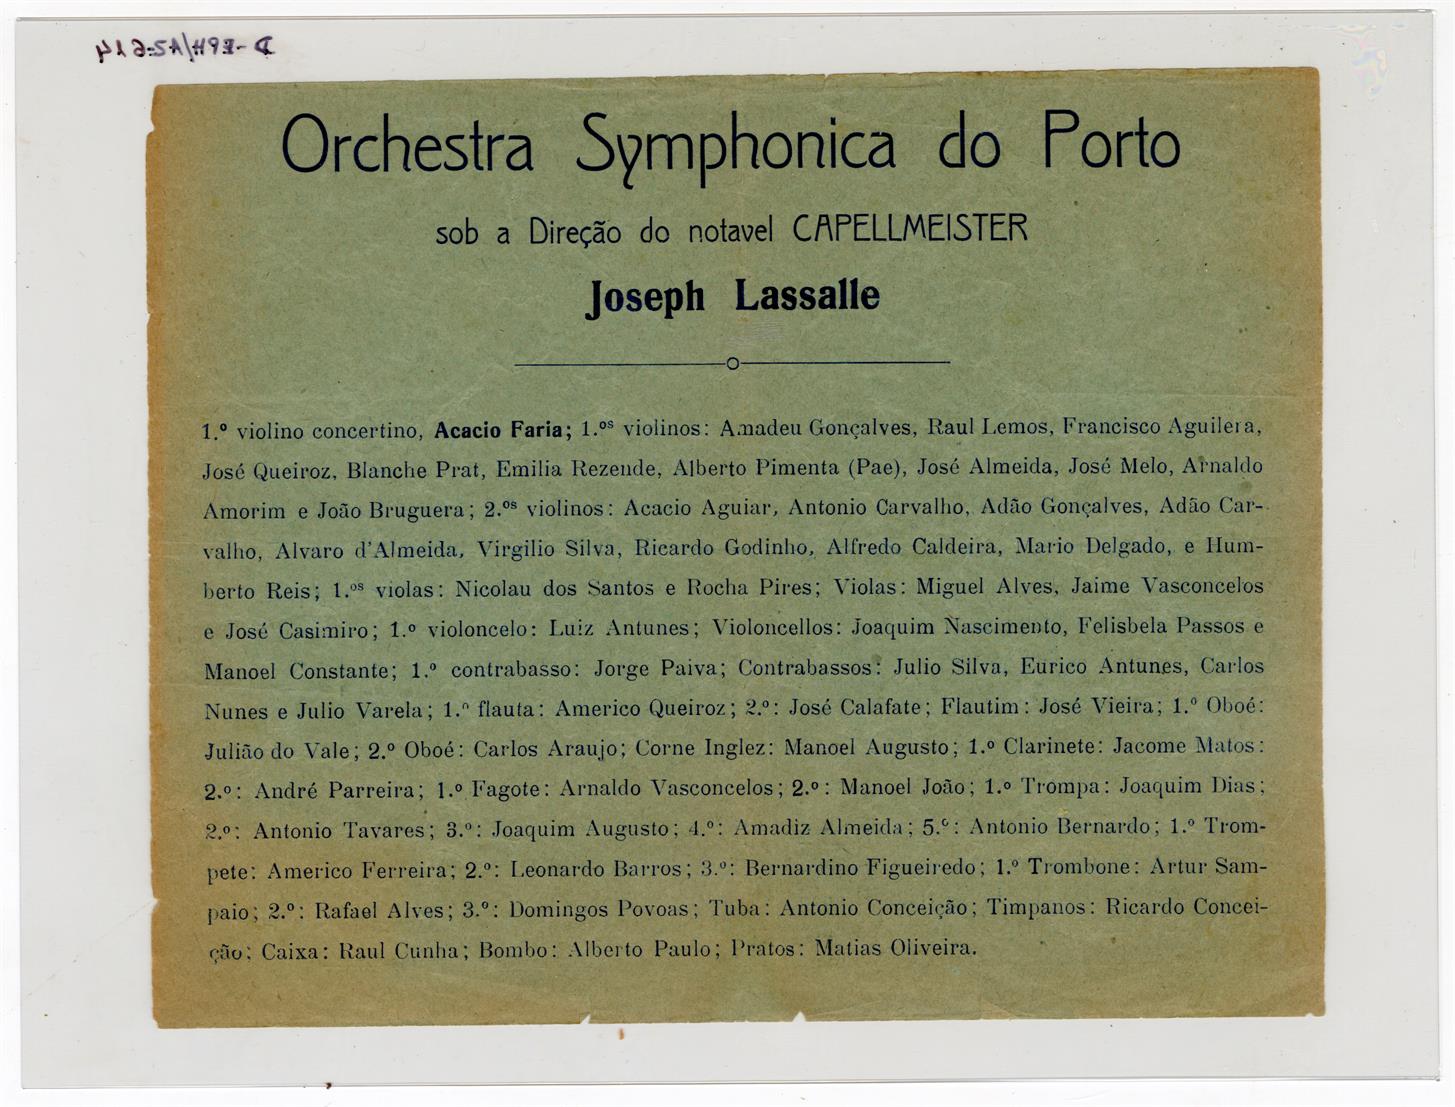 Grande concerto pela Orquestra Sinfónica do Porto